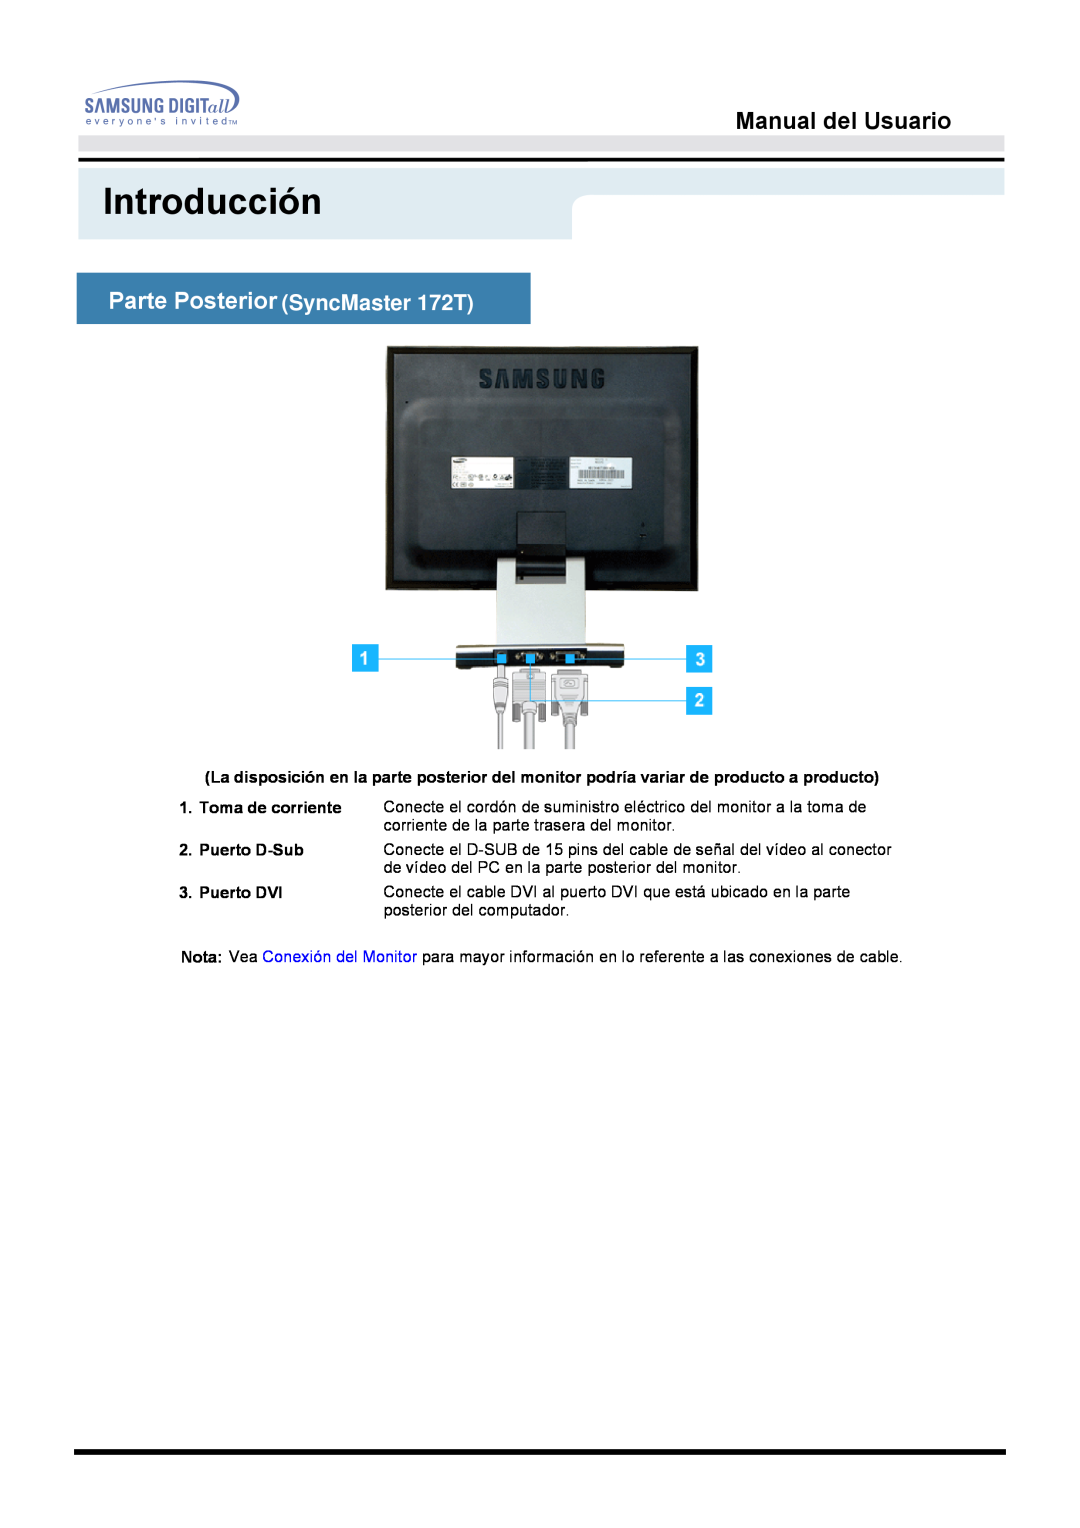 Samsung MO17PSZSQ/EDC manual Parte Posterior SyncMaster 172T, Introducción, Manual del Usuario, Puerto D-Sub 3. Puerto DVI 